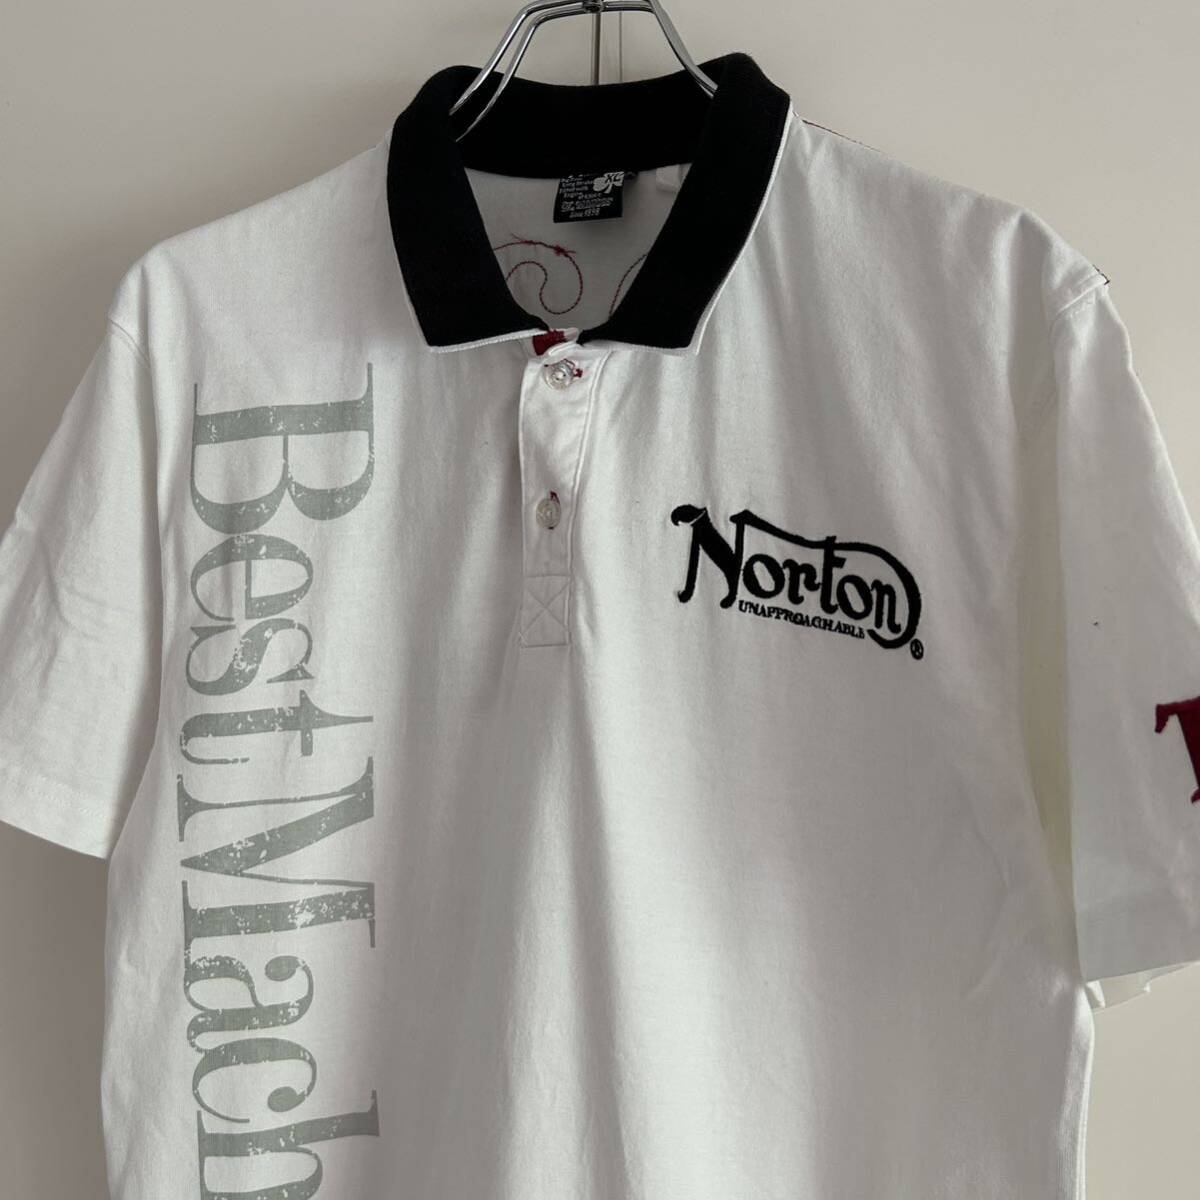 Norton ノートン ポロシャツ XL モーターサイクル 刺繍 ホワイト 大きいサイズ_画像3